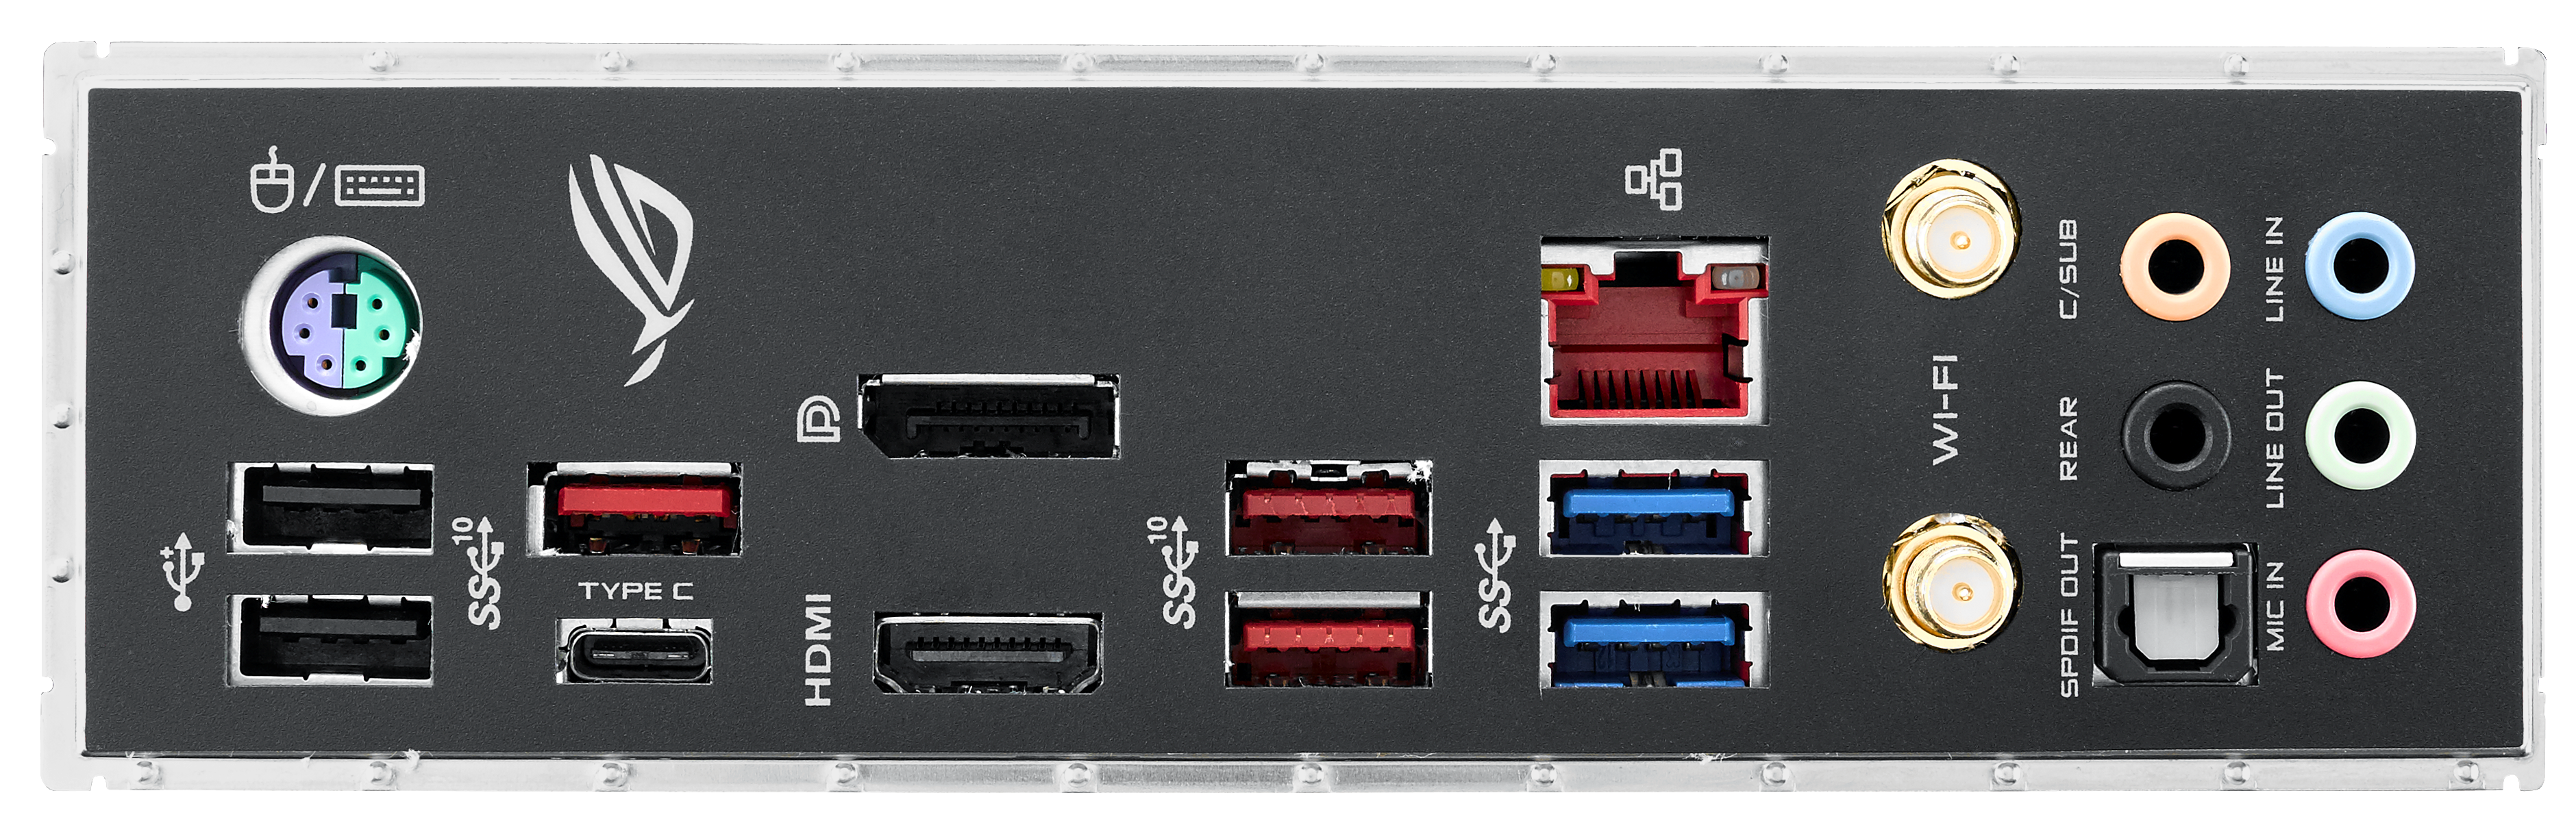 Barcelona I øvrigt Muldyr ASUS ROG Strix Z390-E Gaming - Intel Z390 Motherboard Overview: 50+  Motherboards Analyzed